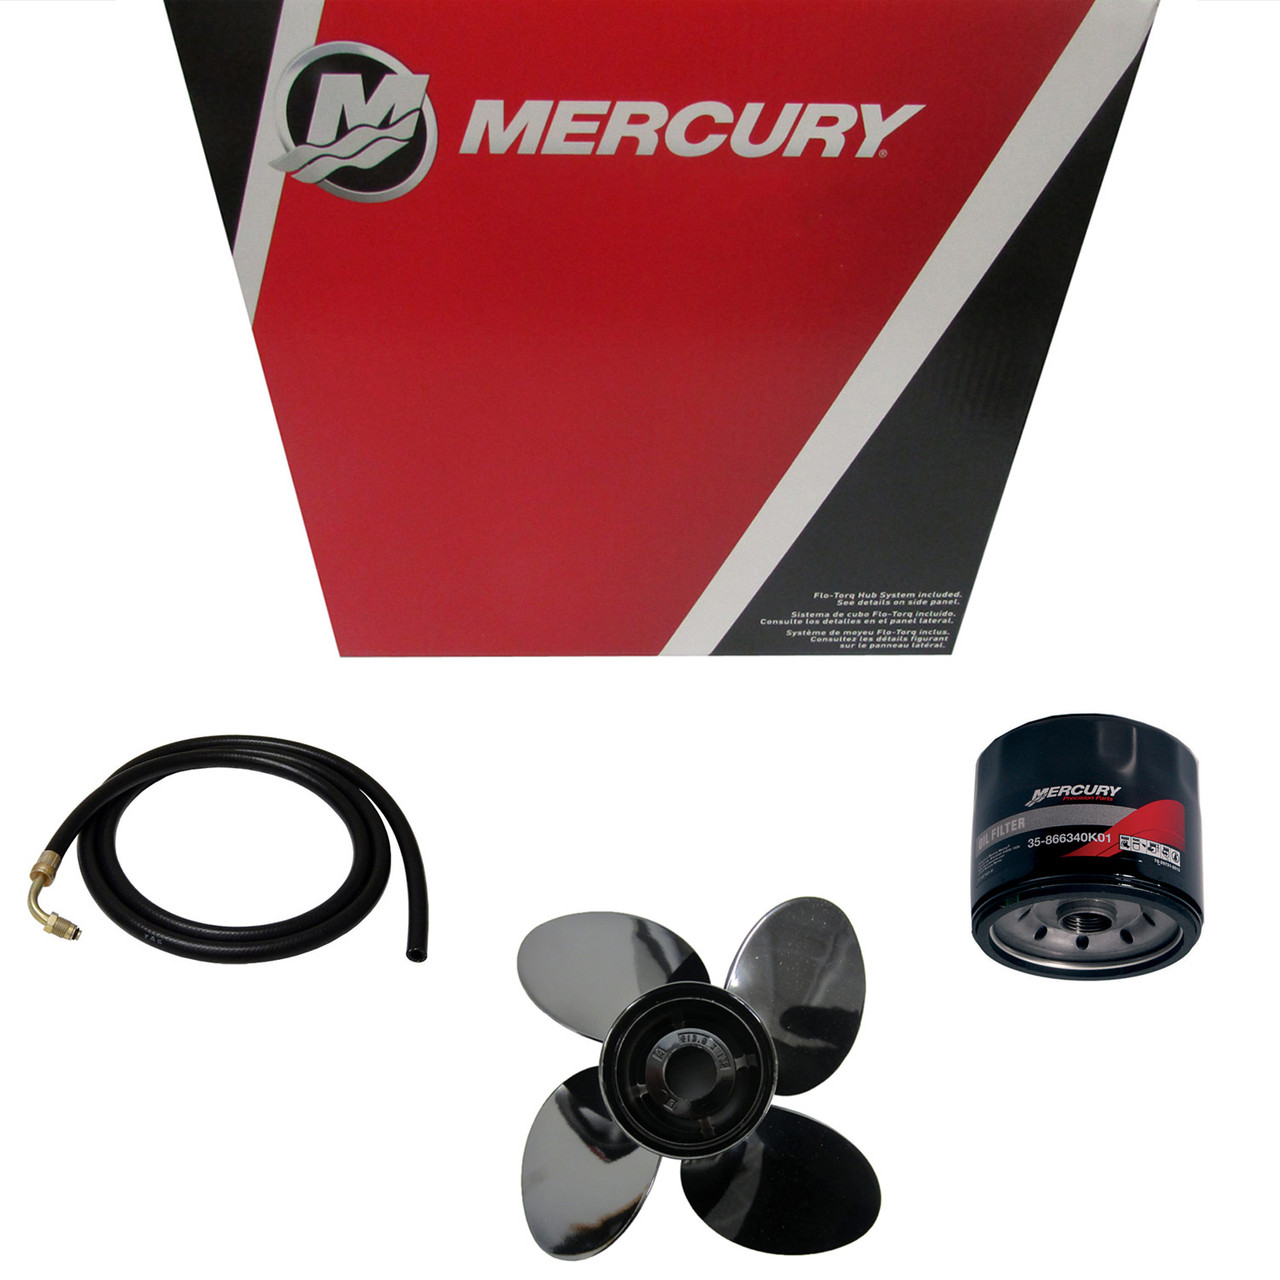 Mercury Marine / Mercruiser New OEM Mercury Marine / Mercruiser New Oem Cable, 853740016, 853740016